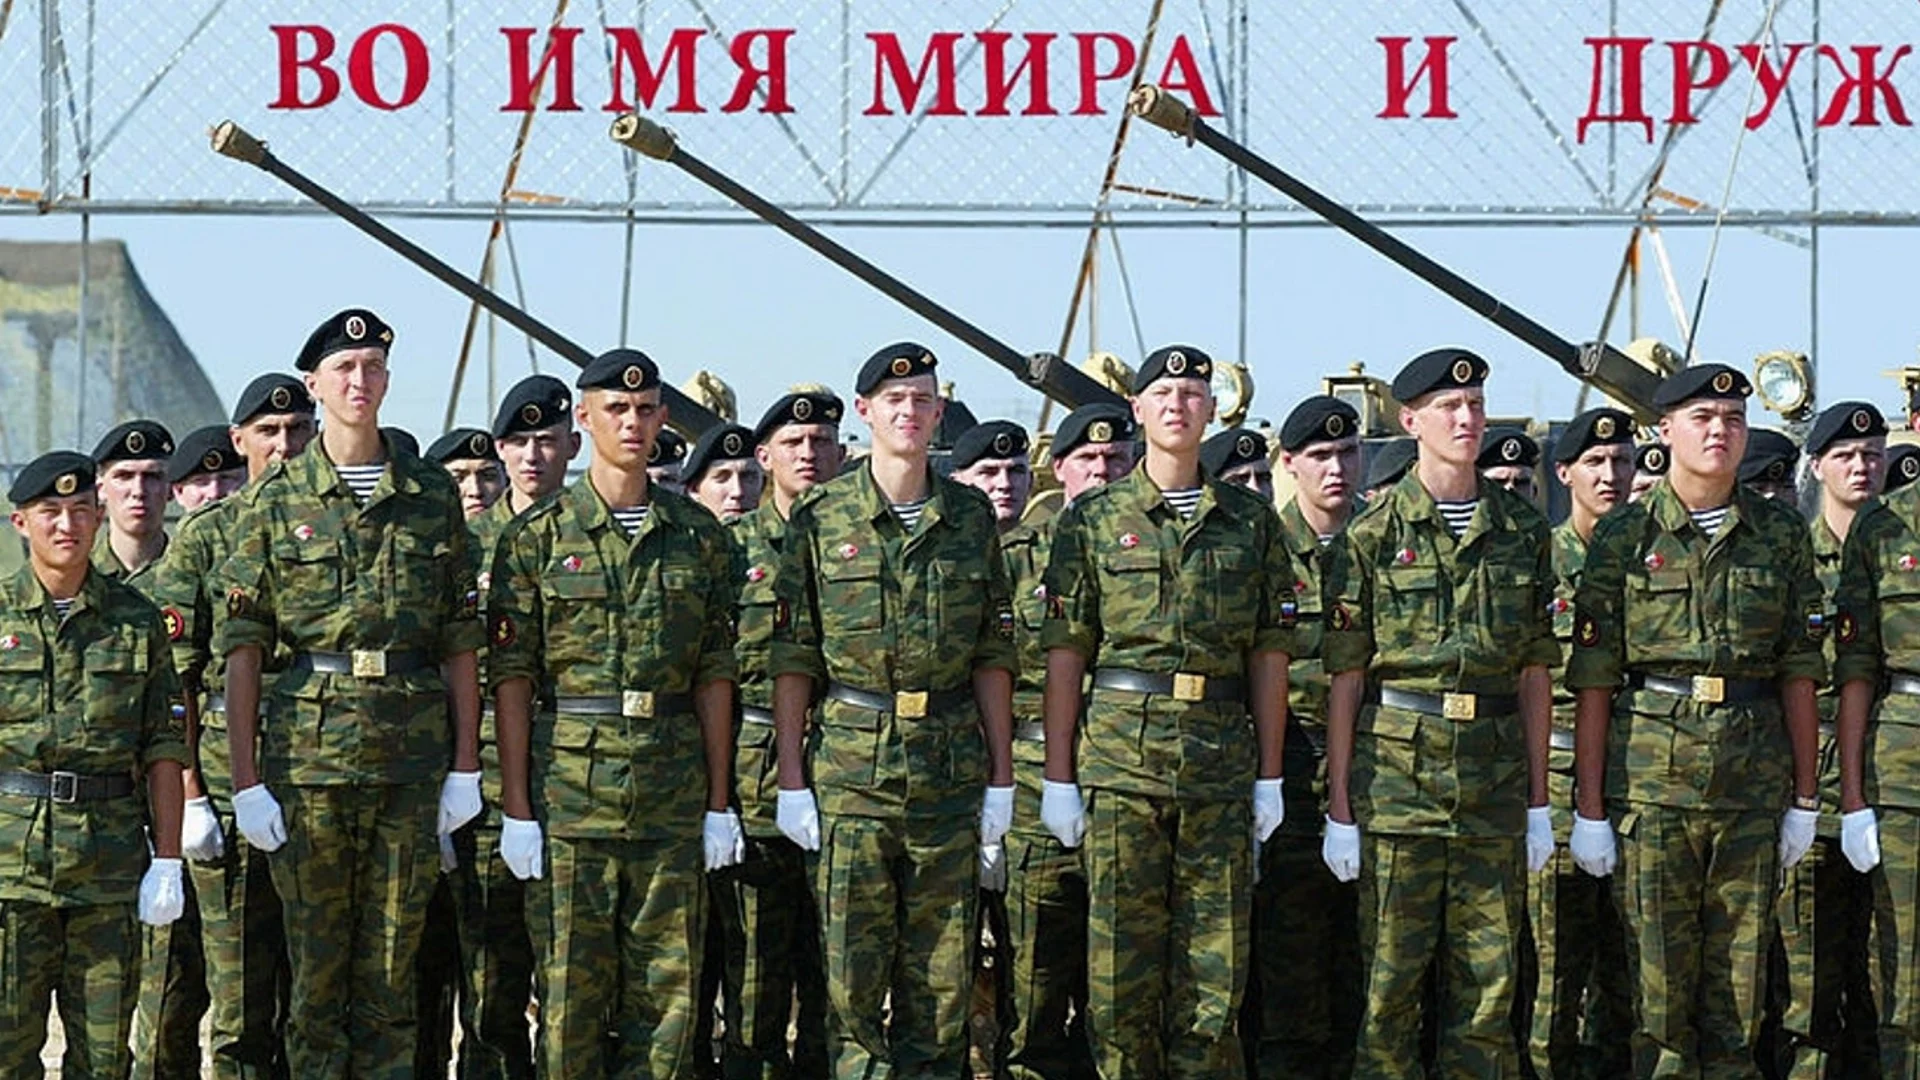 В руската армия правят школи за бойно управление на мотори, дори пропагандистите се смеят (ВИДЕО)